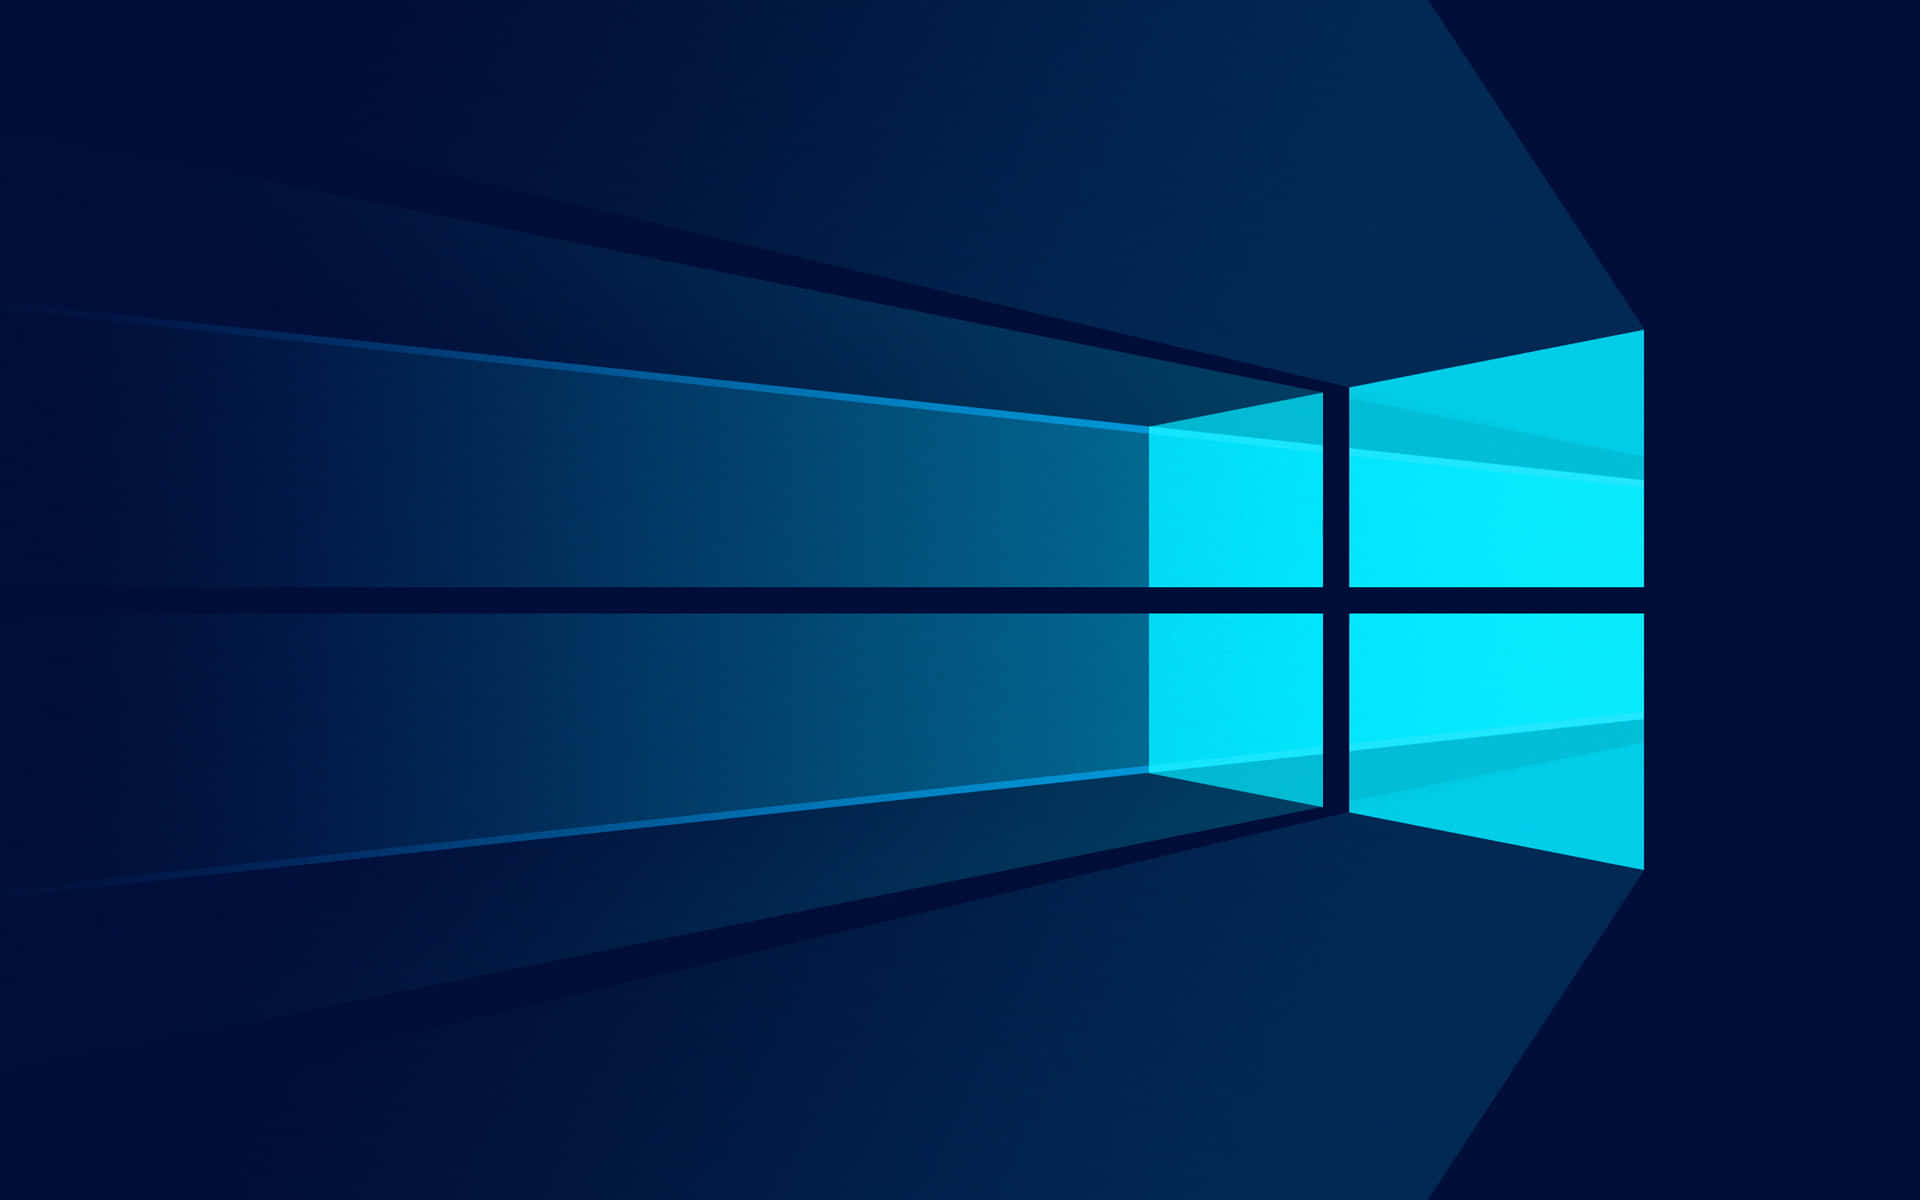 Sfondoa Illustrazione Vettoriale Di Windows 10 Blu